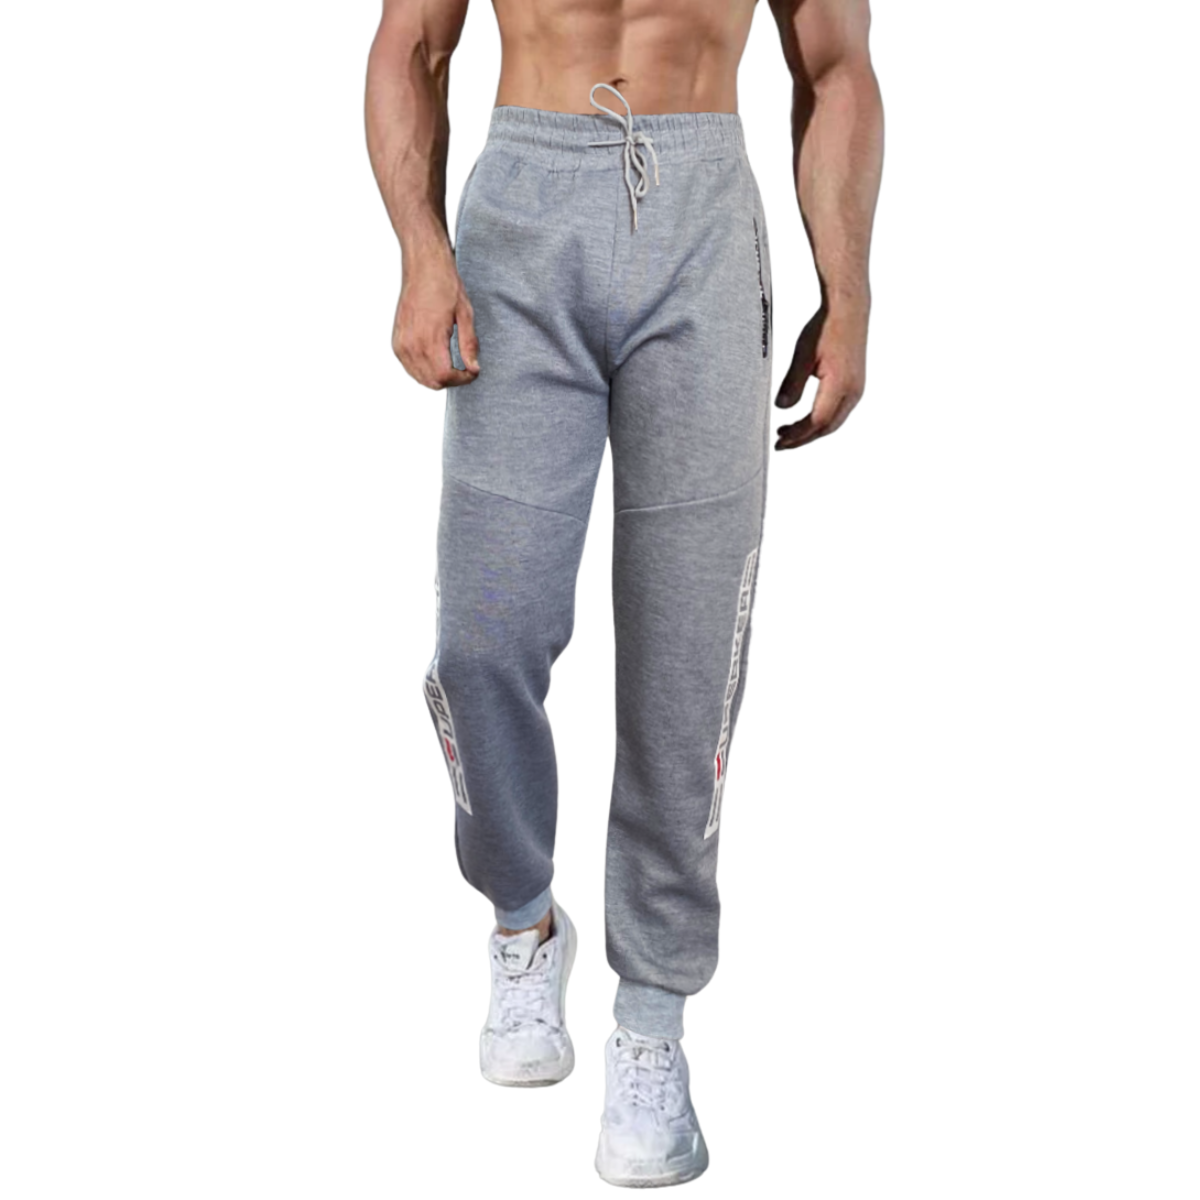 Pants Hombre Cargo Con Bolsas Gym Jogger Caballero Casual